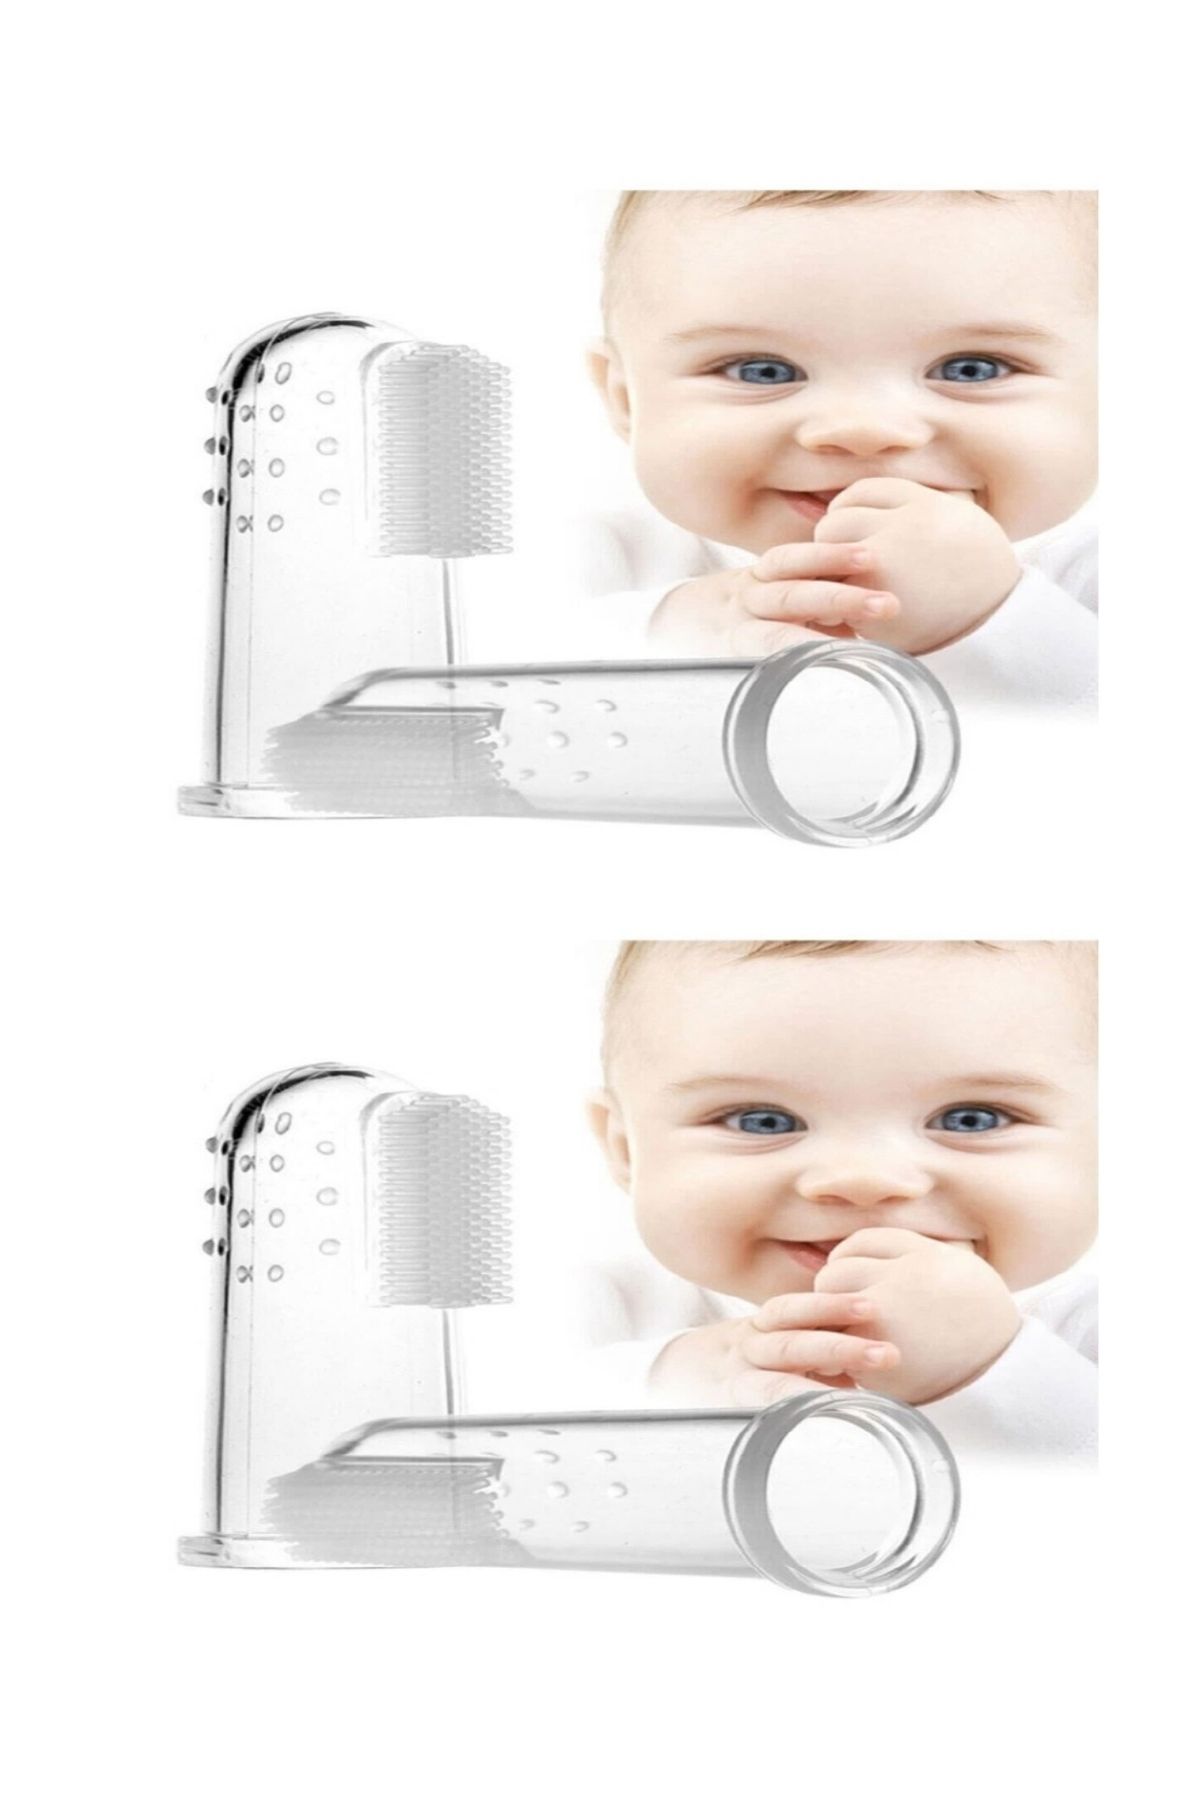 Impress 2'li Mini Bebek Çocuk Parmak Diş Fırçası Saklama Kabı 2 Adet Renk: Mavi ve Şeffaf